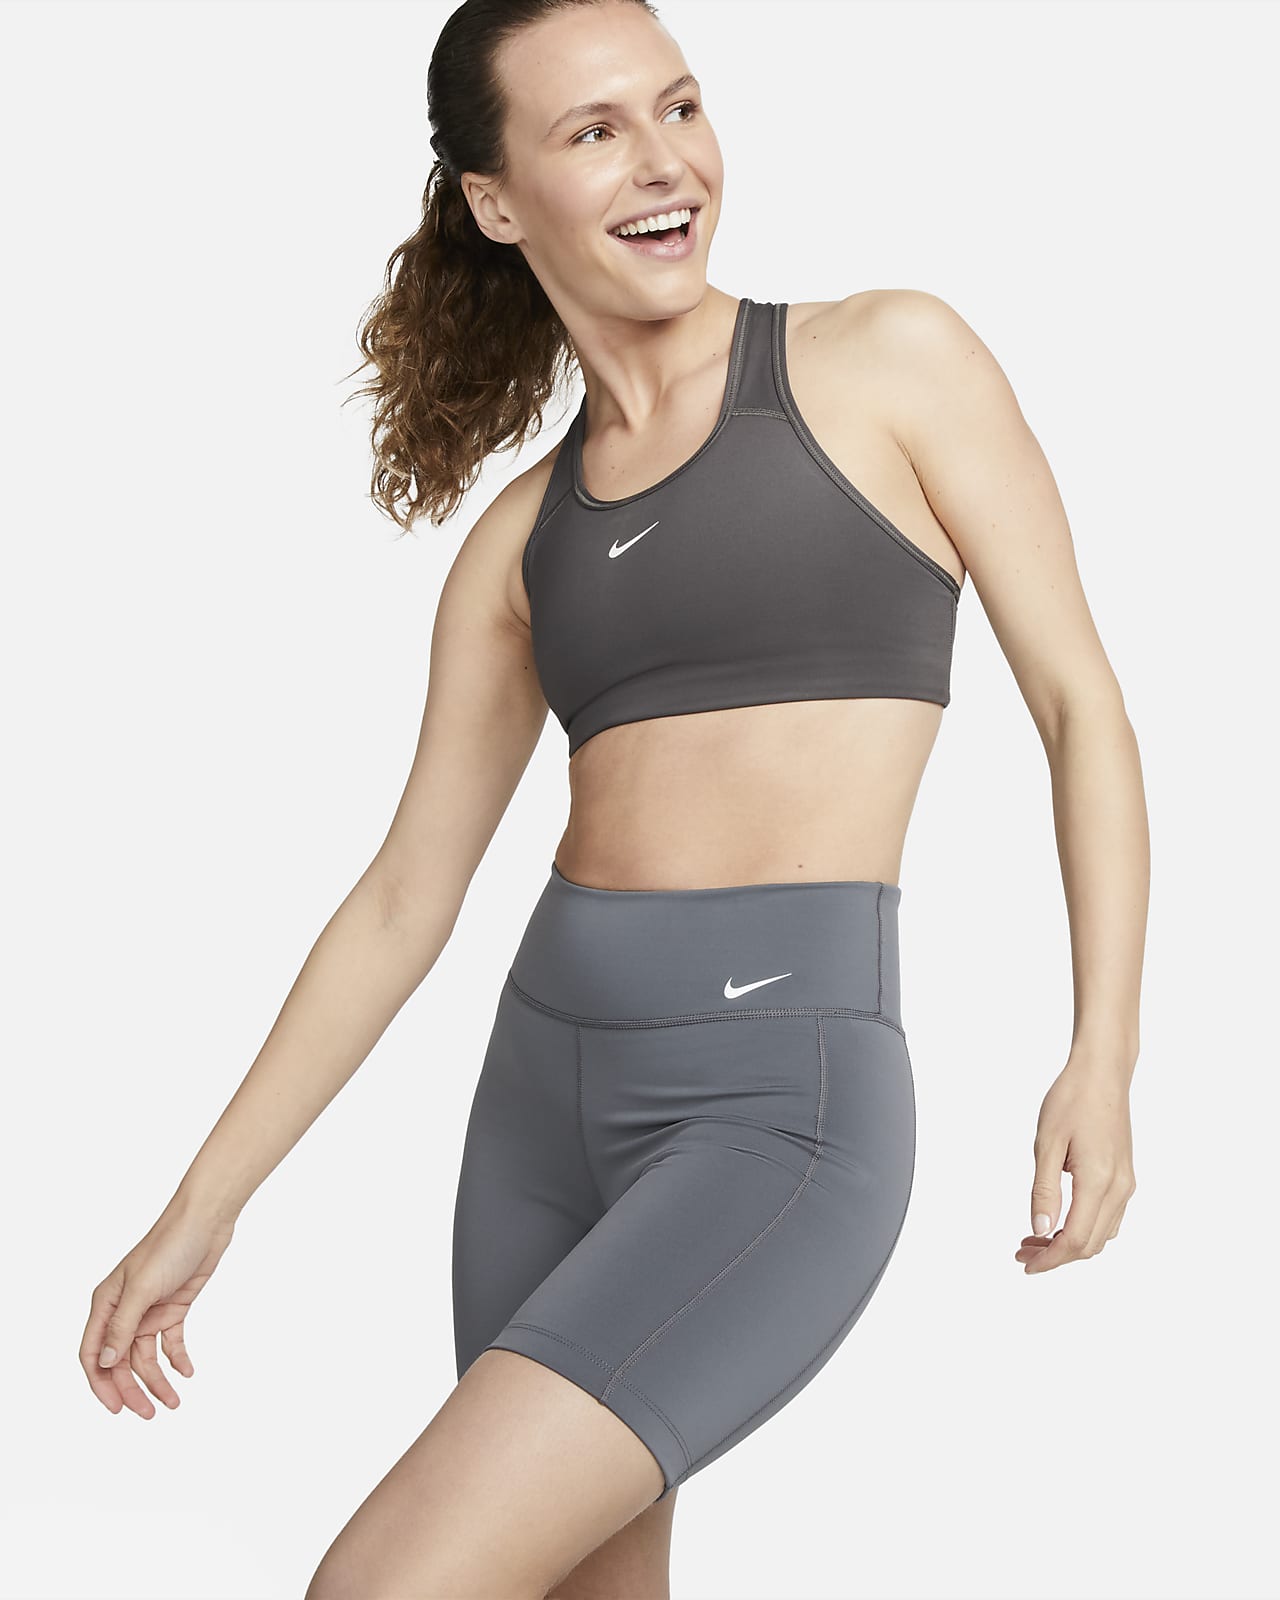 Movement-Encouraging Workout Wear : Nike Women Fall